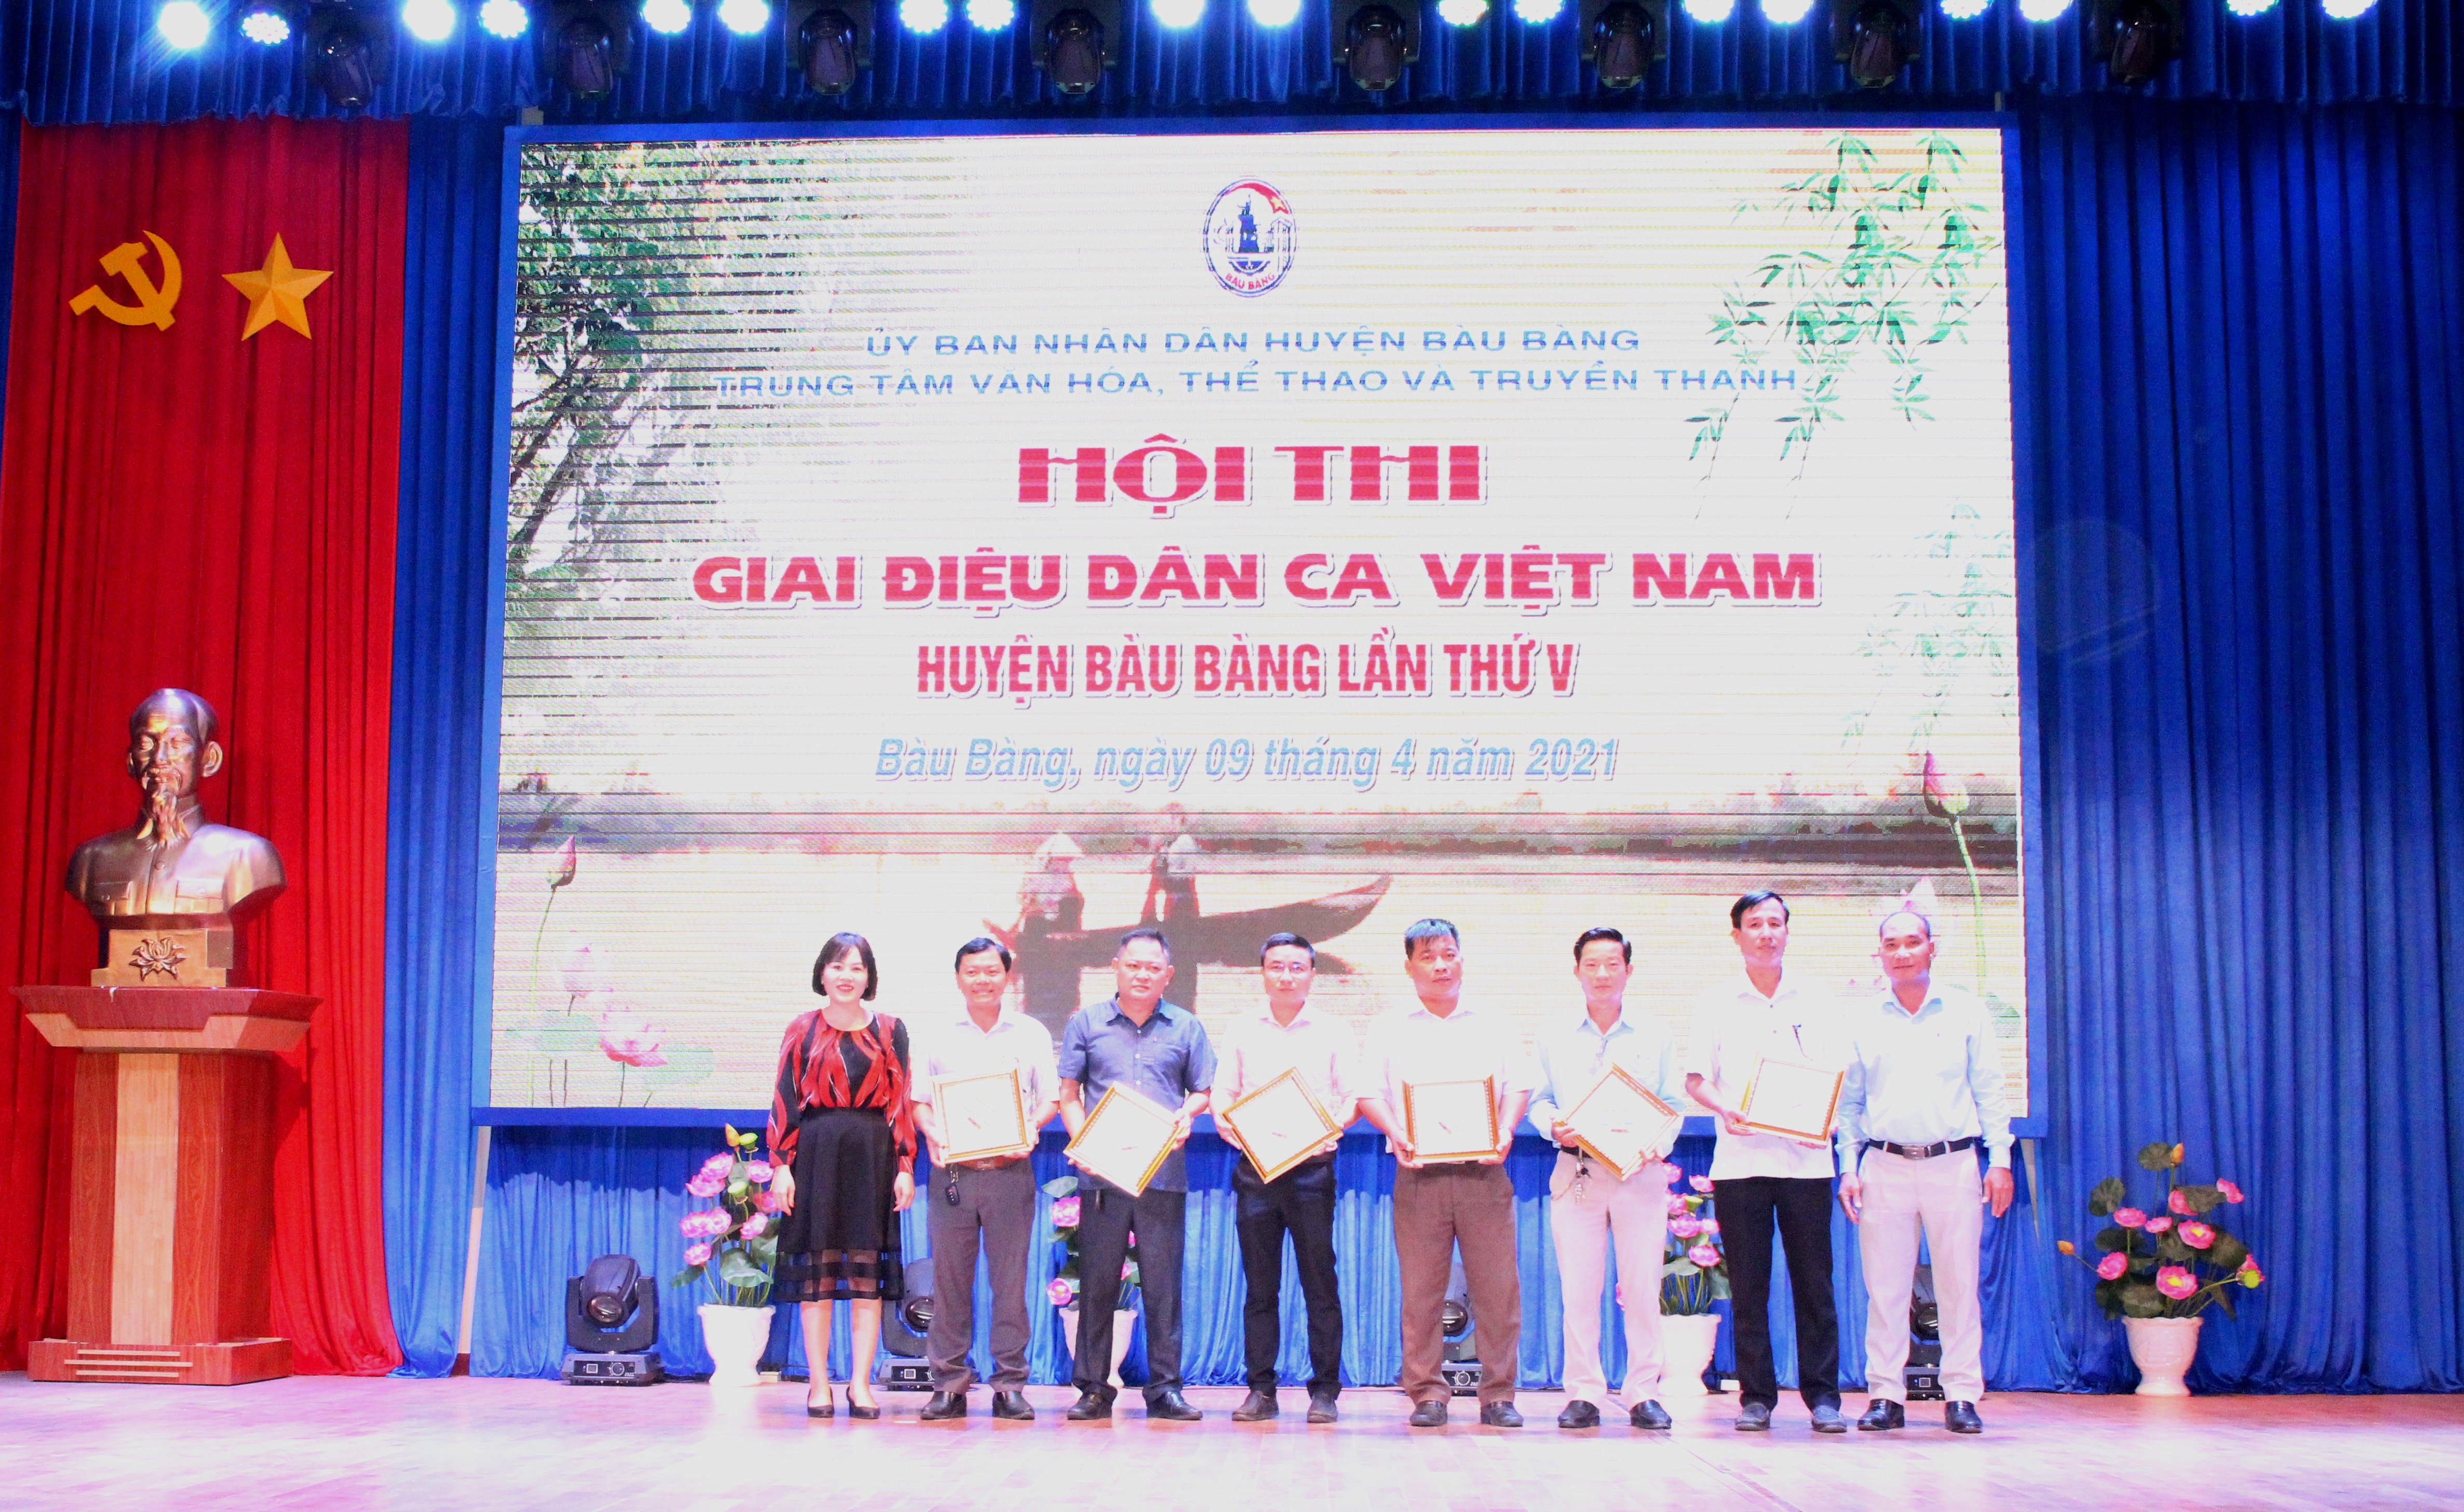 lãnh đạo Trung tâm Văn hóa, Thể thao và Truyền thanh huyện Bàu Bàng trao quà lưu niệm cho các đơn vị tham gia hội thi